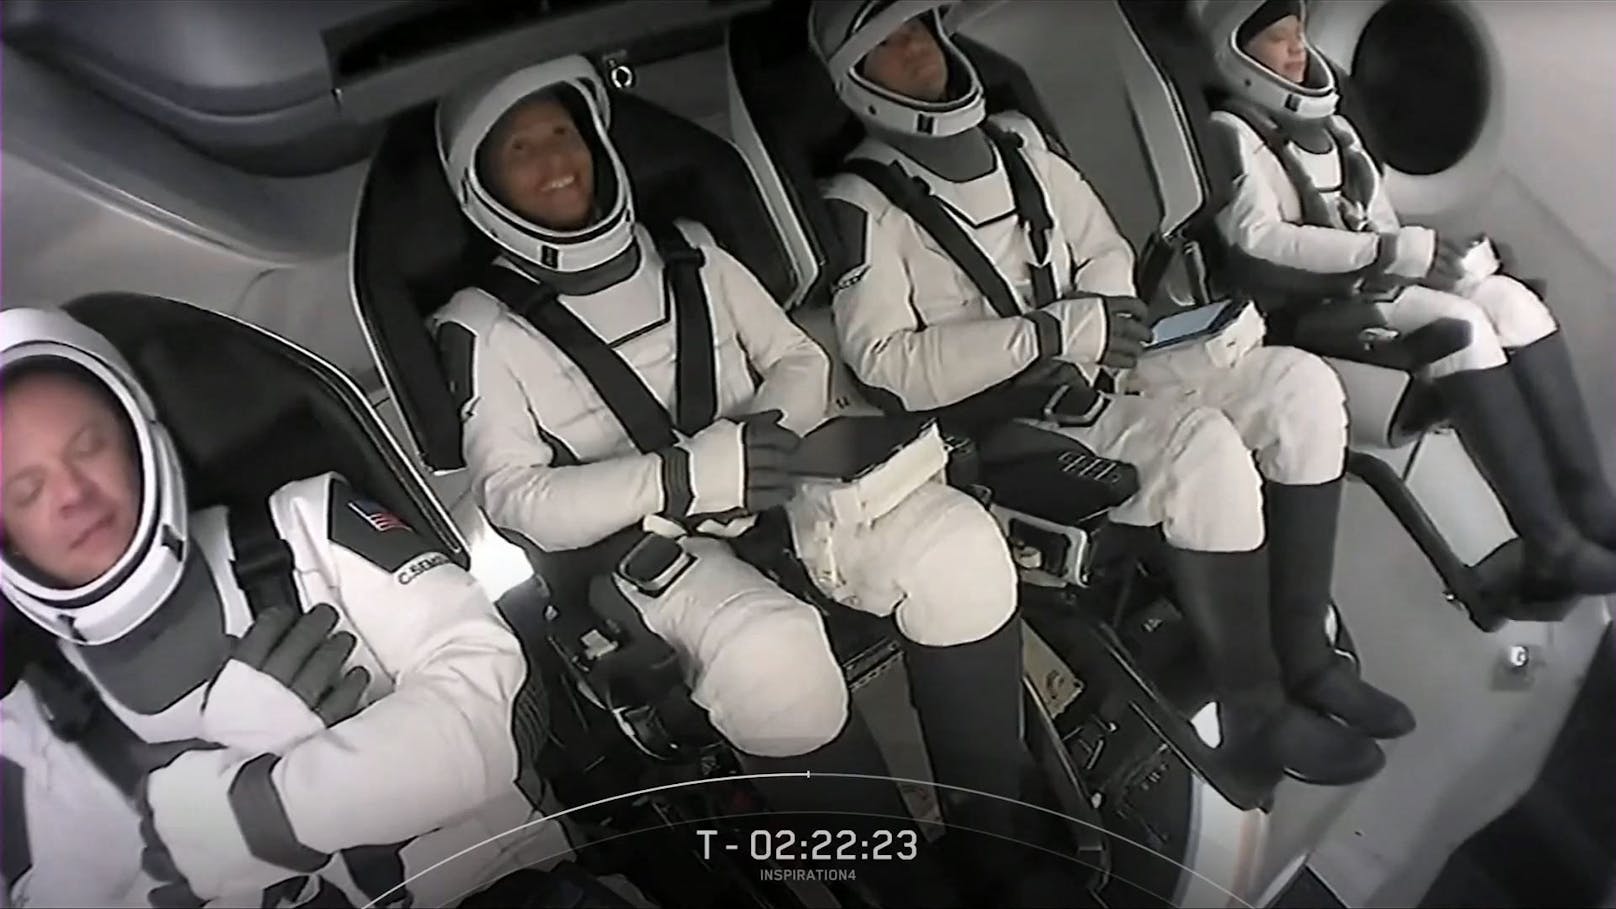 Chris Sembroski, Sian Proctor, Jared Isaacman und Hayley Arceneaux starteten&nbsp;am Donnerstag um 2 Uhr (MESZ) mit Hilfe einer Falcon 9-Rakete vom Weltraumbahnhof Cape Canaveral im US-Bundesstaat Florida ins Weltall.